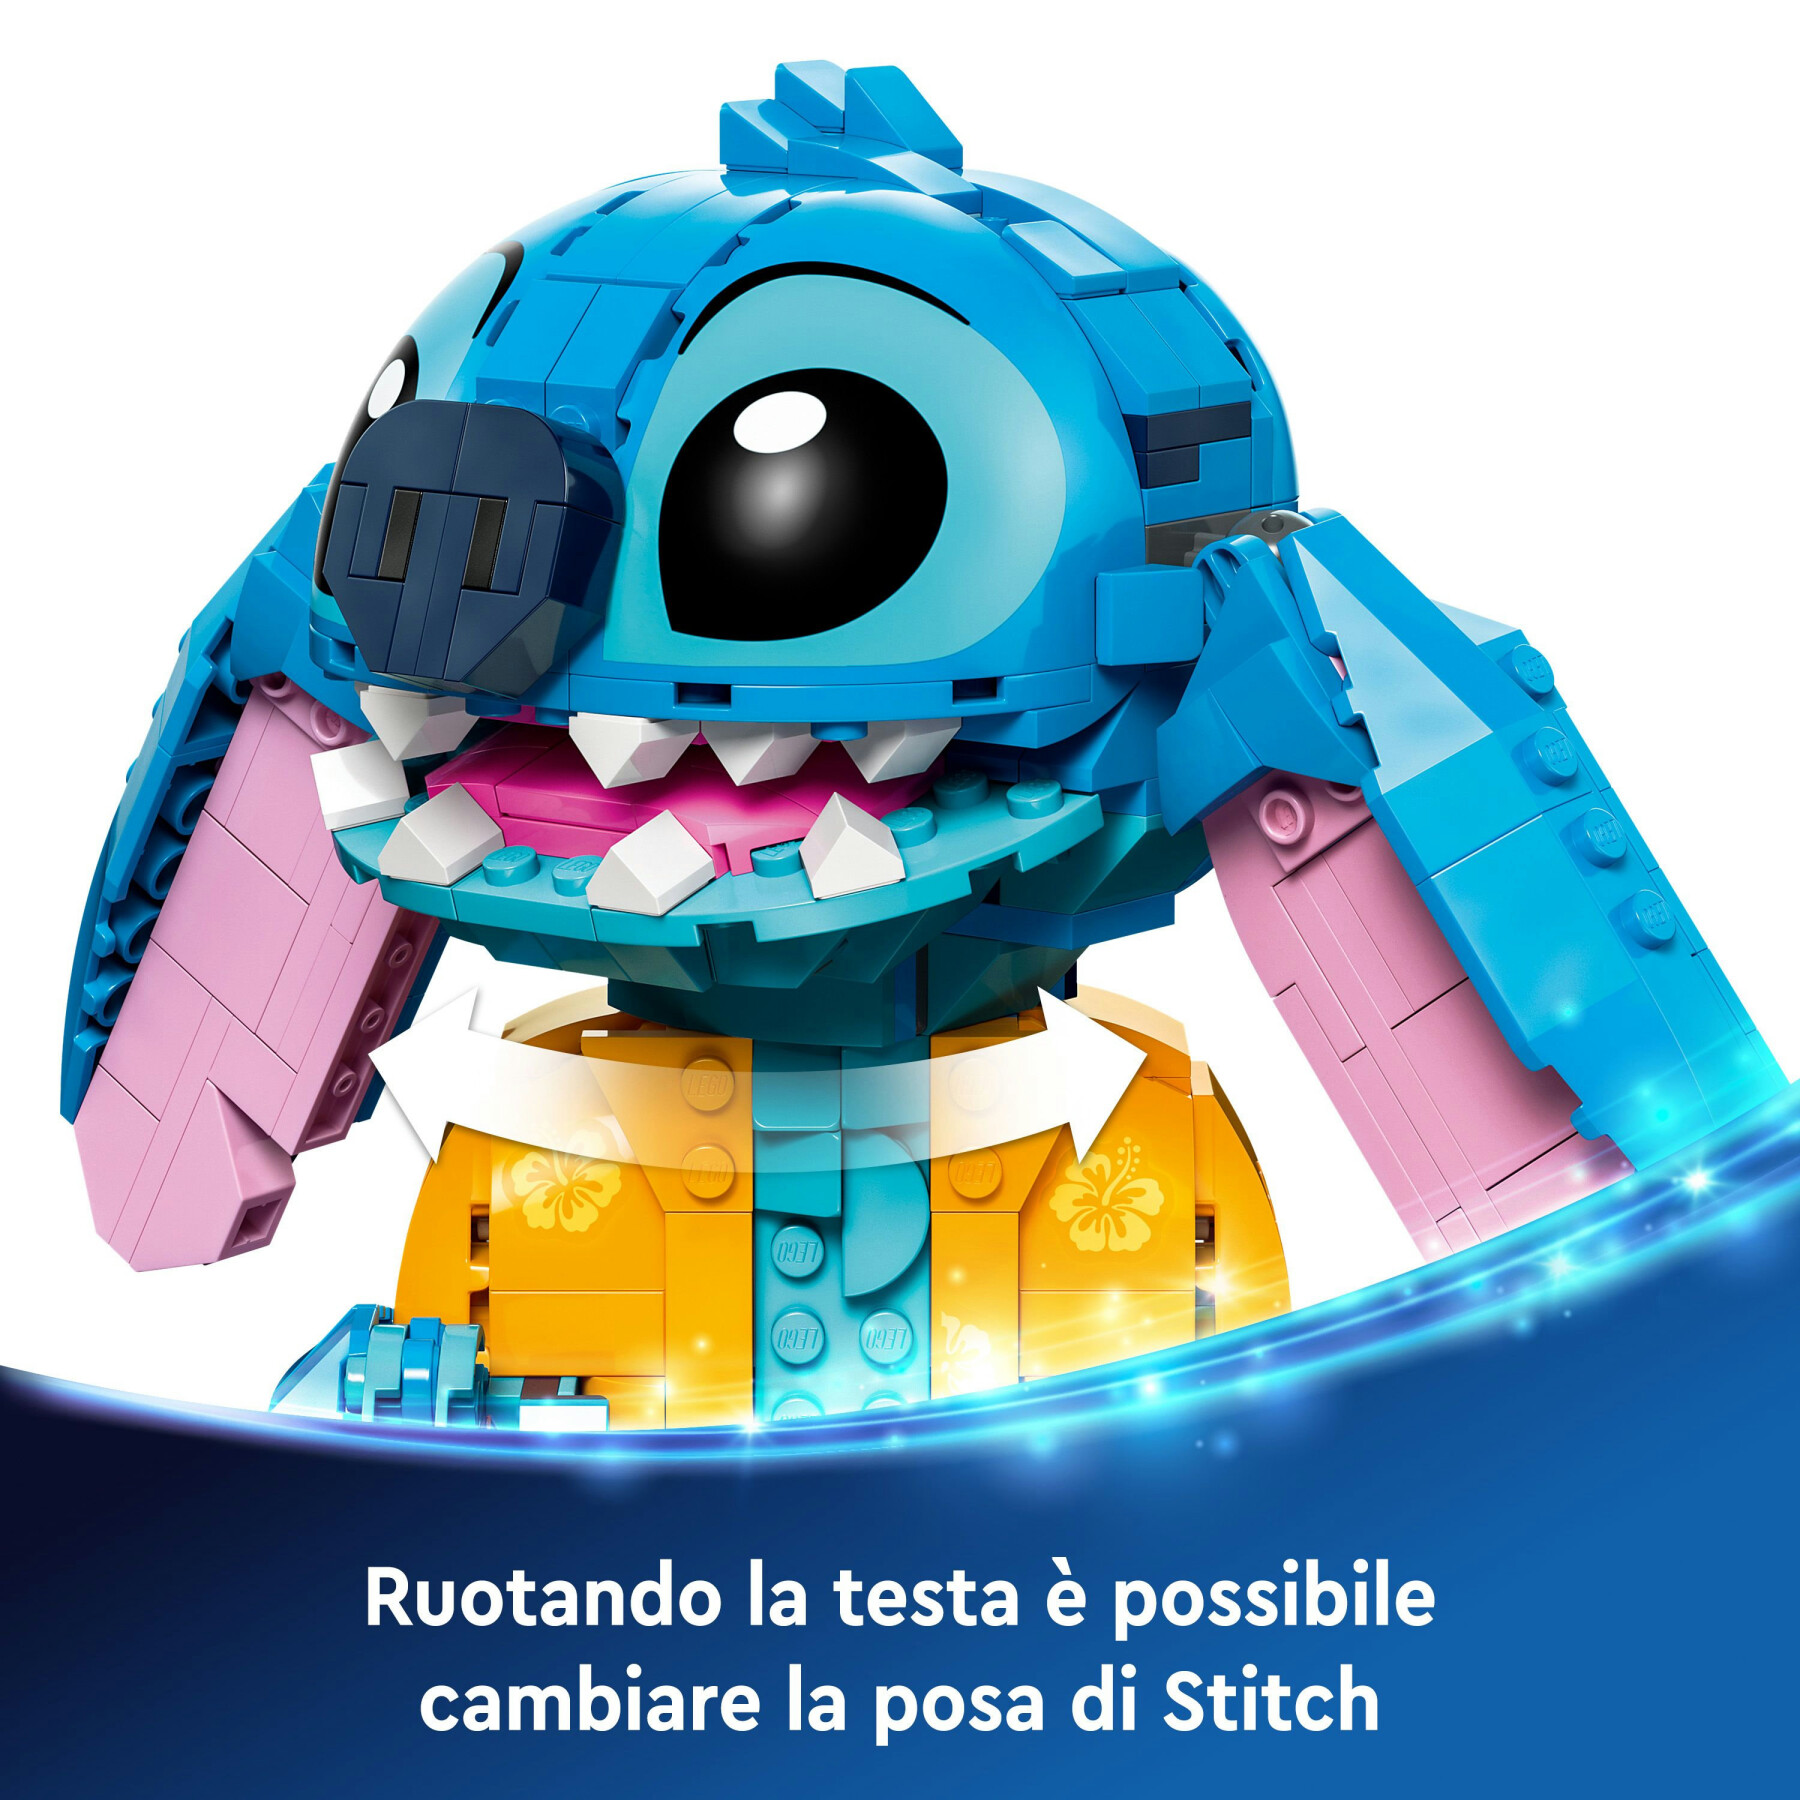 Lego disney 43249 stitch, gioco per bambini 9+, personaggio da costruire con parti mobili, idea regalo divertente dal film - Disney Stitch, Lego